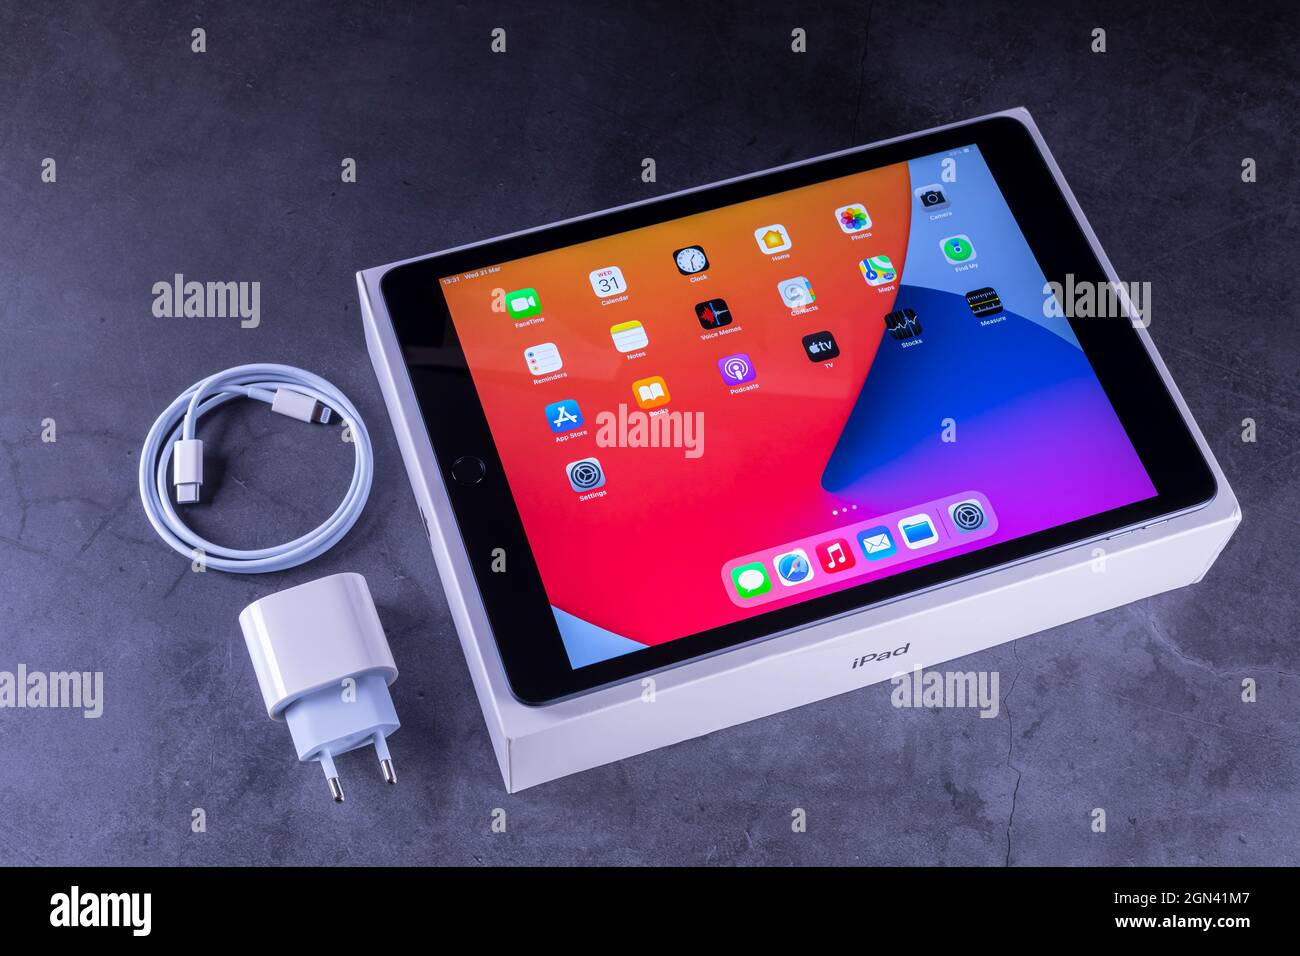 Galati, Rumania, 31 de marzo de 2021: - Apple lanzar la nueva generación de iPad 8th con el potente chip biónico A12, soporte para Apple Pencil y la llave inteligente Foto de stock